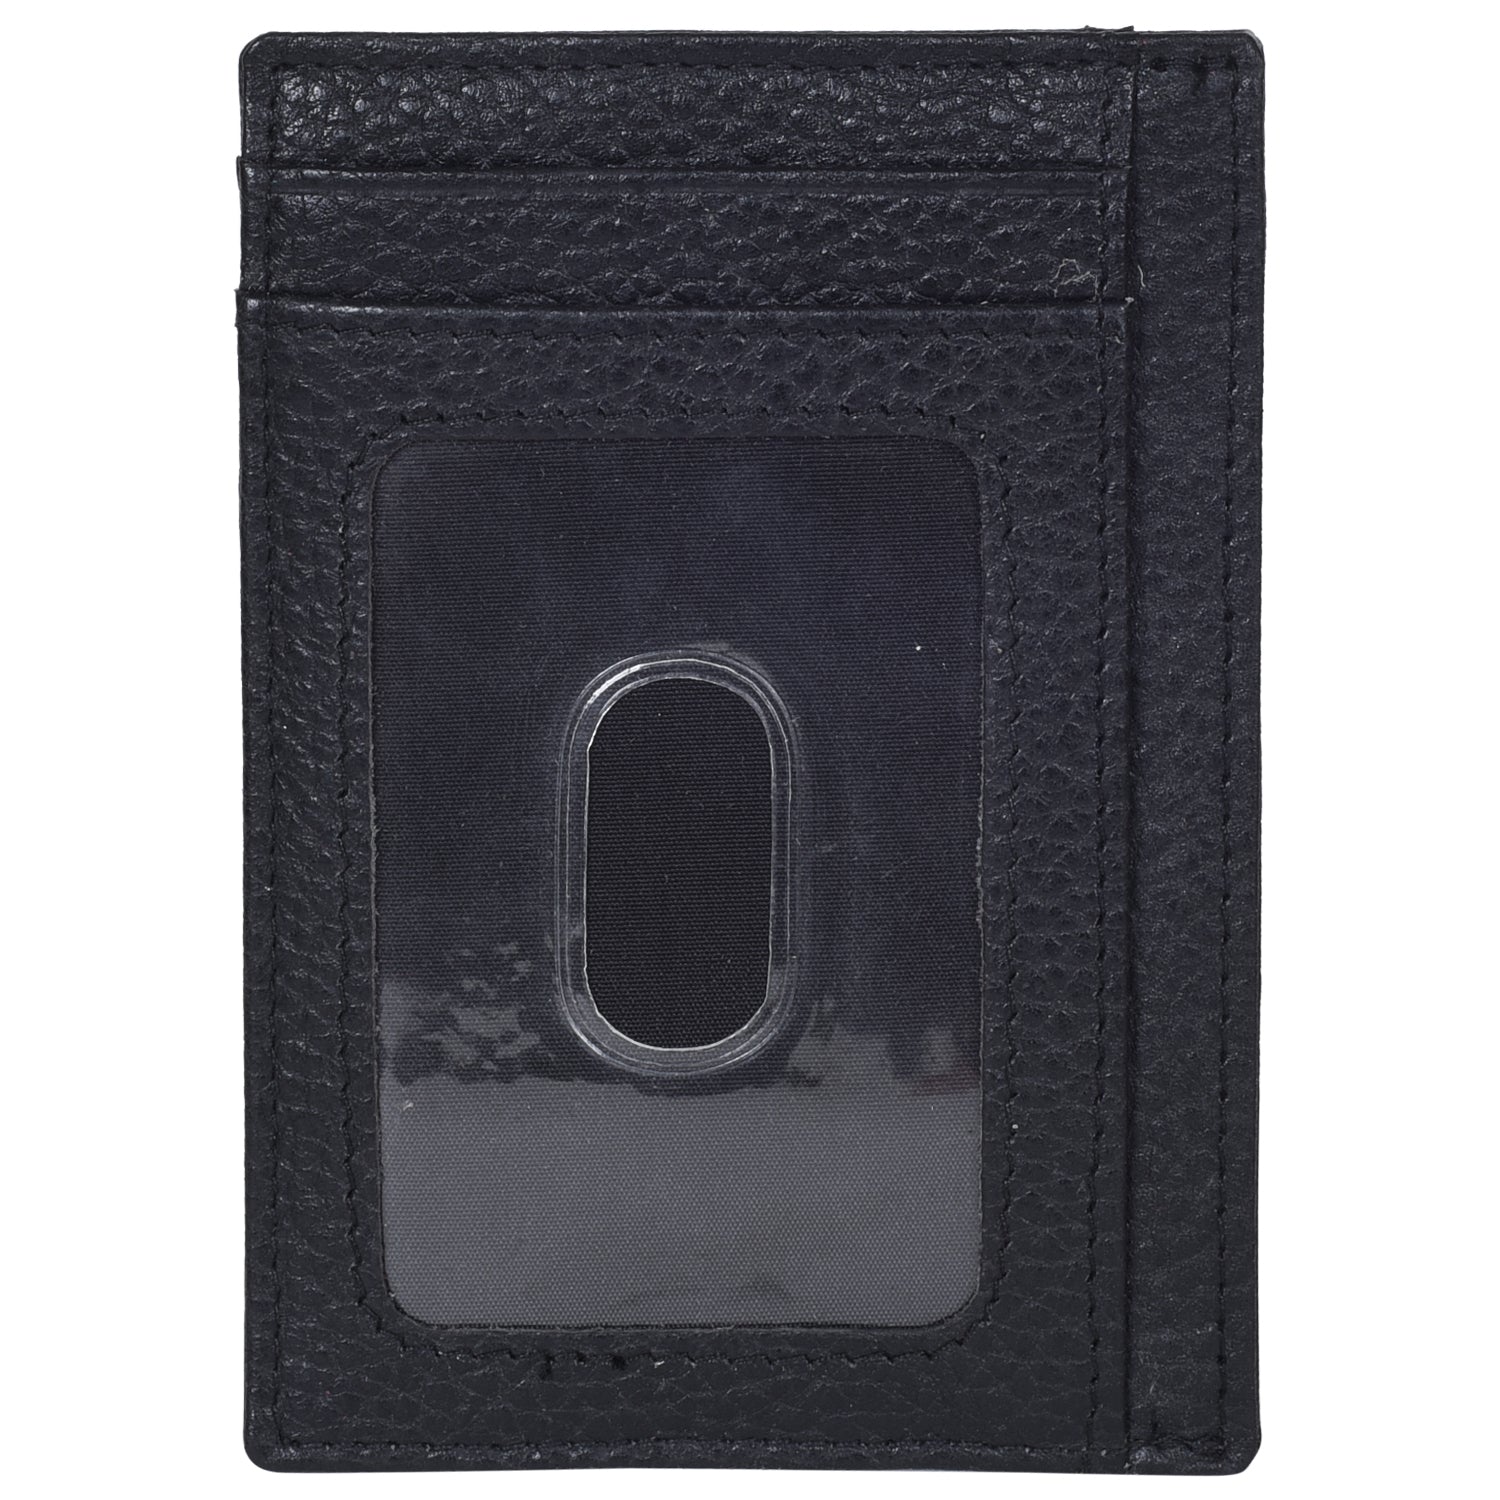 Portlee Leather Slim Card Holder, Black - Portlee